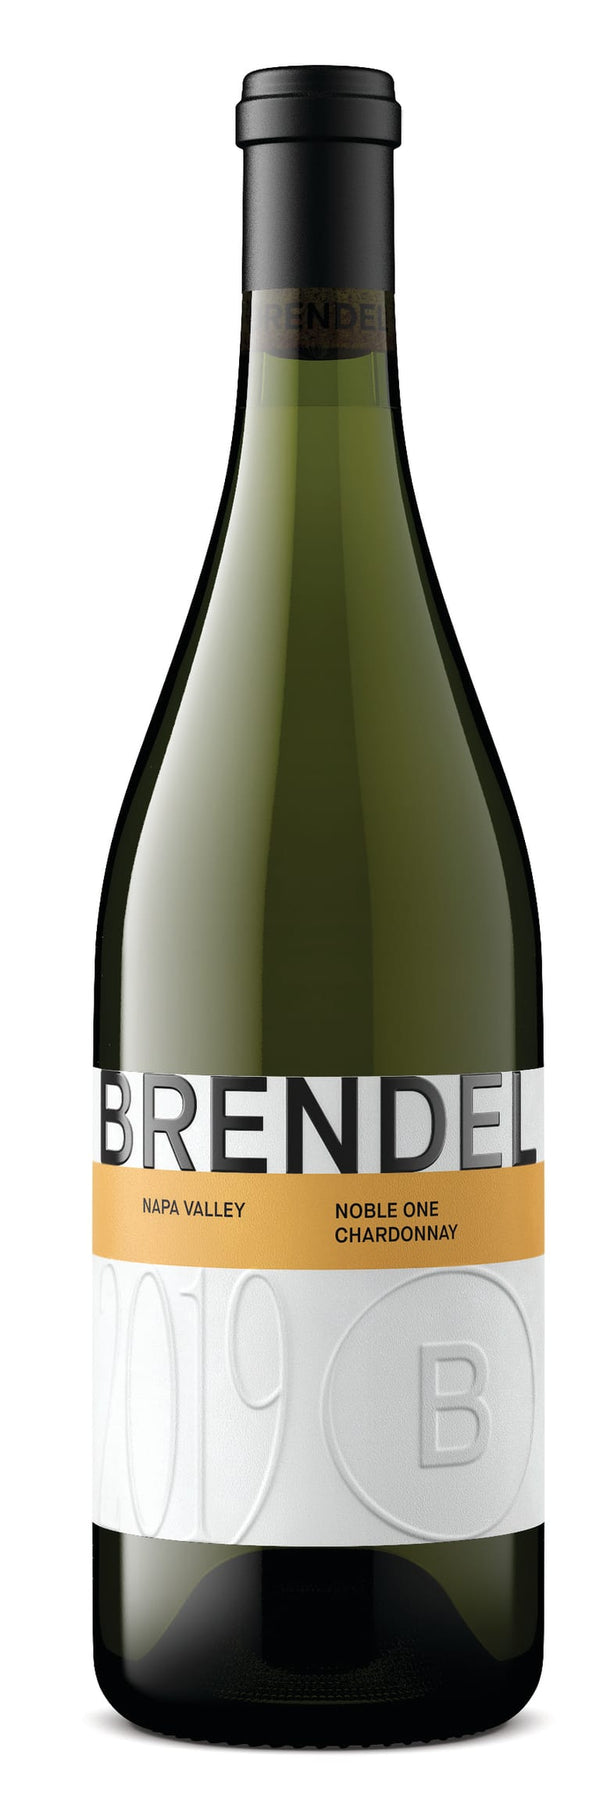 Brendel 'Noble One' Chardonnay , Napa Valley